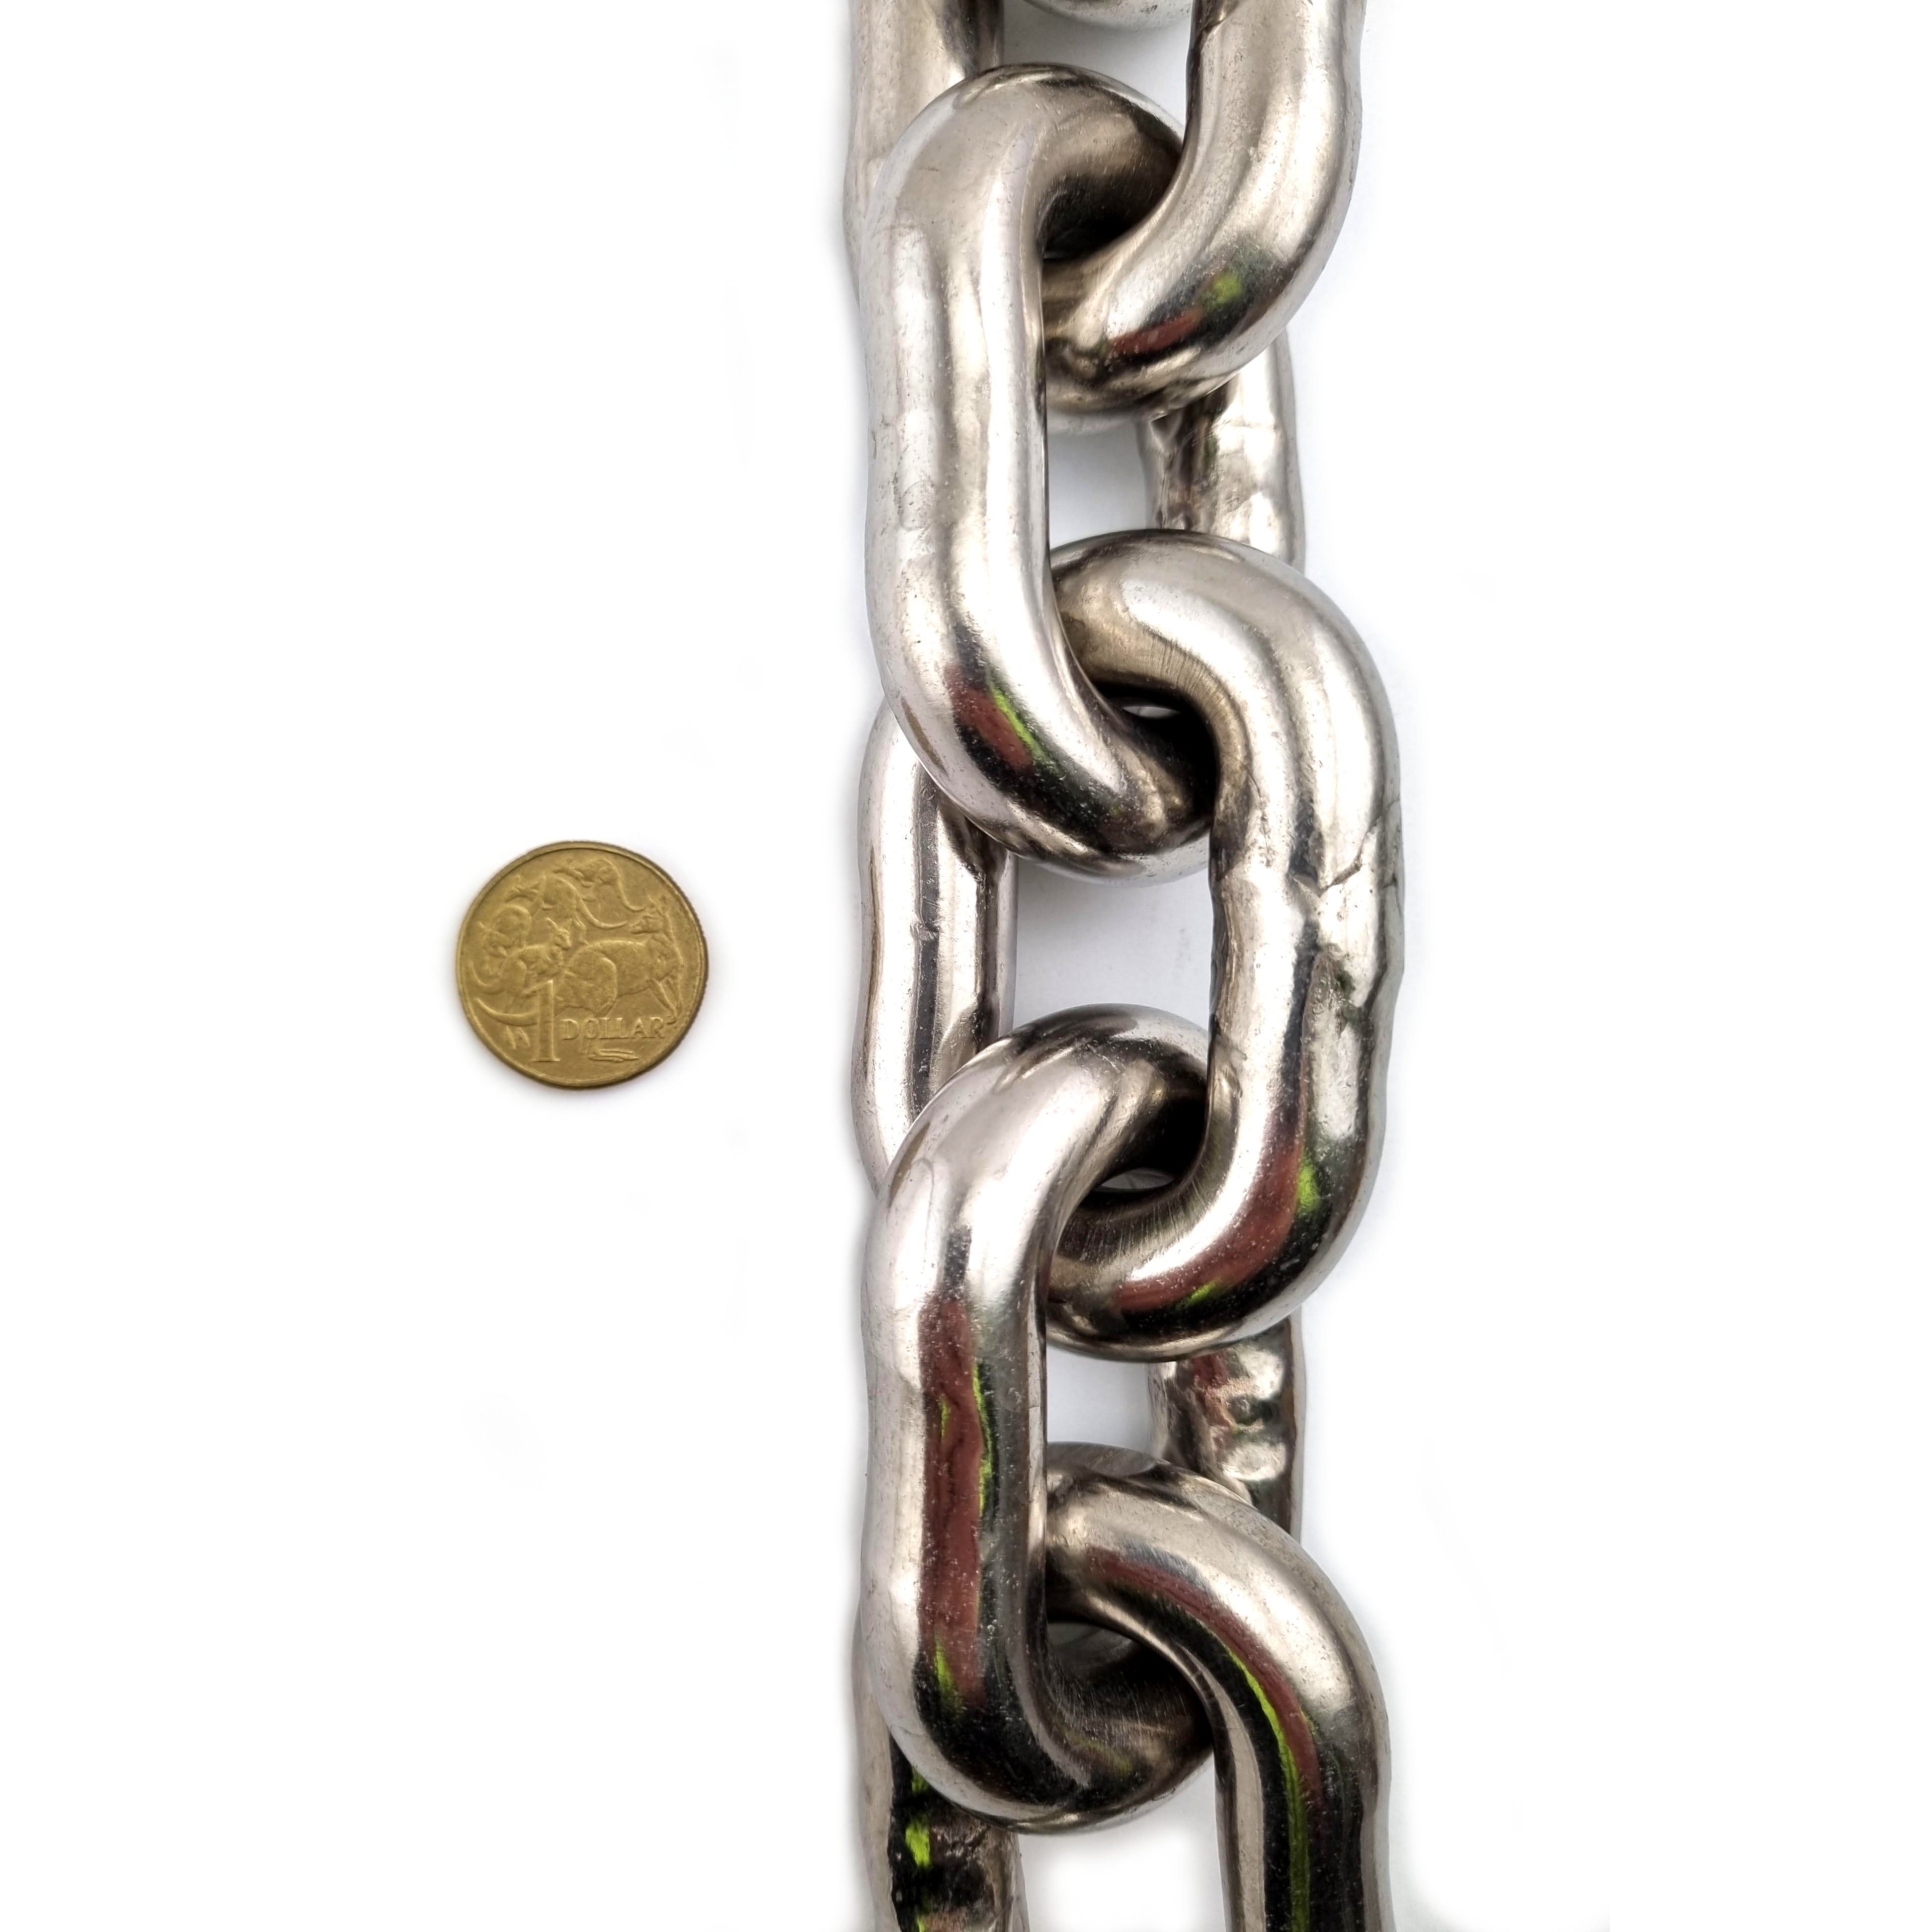 16mm stainless steel welded short link chain. Australia